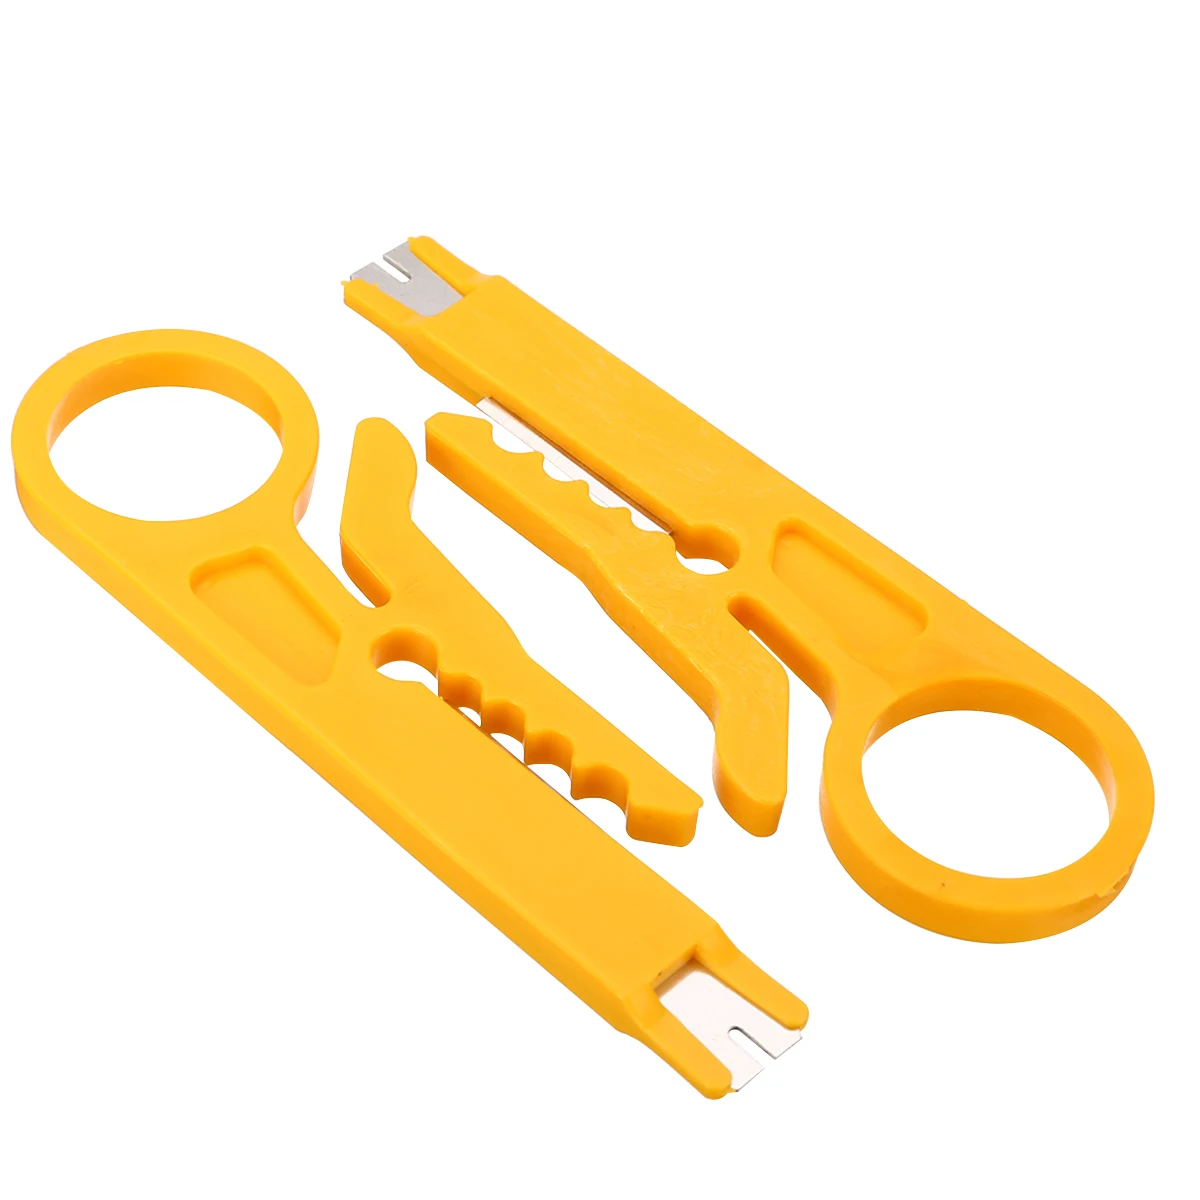 2 шт./компл. 9 см короткое желтое инструмент для зачистки кабеля сети Портативный кусачки с резьбовой головкой, режущий инструмент